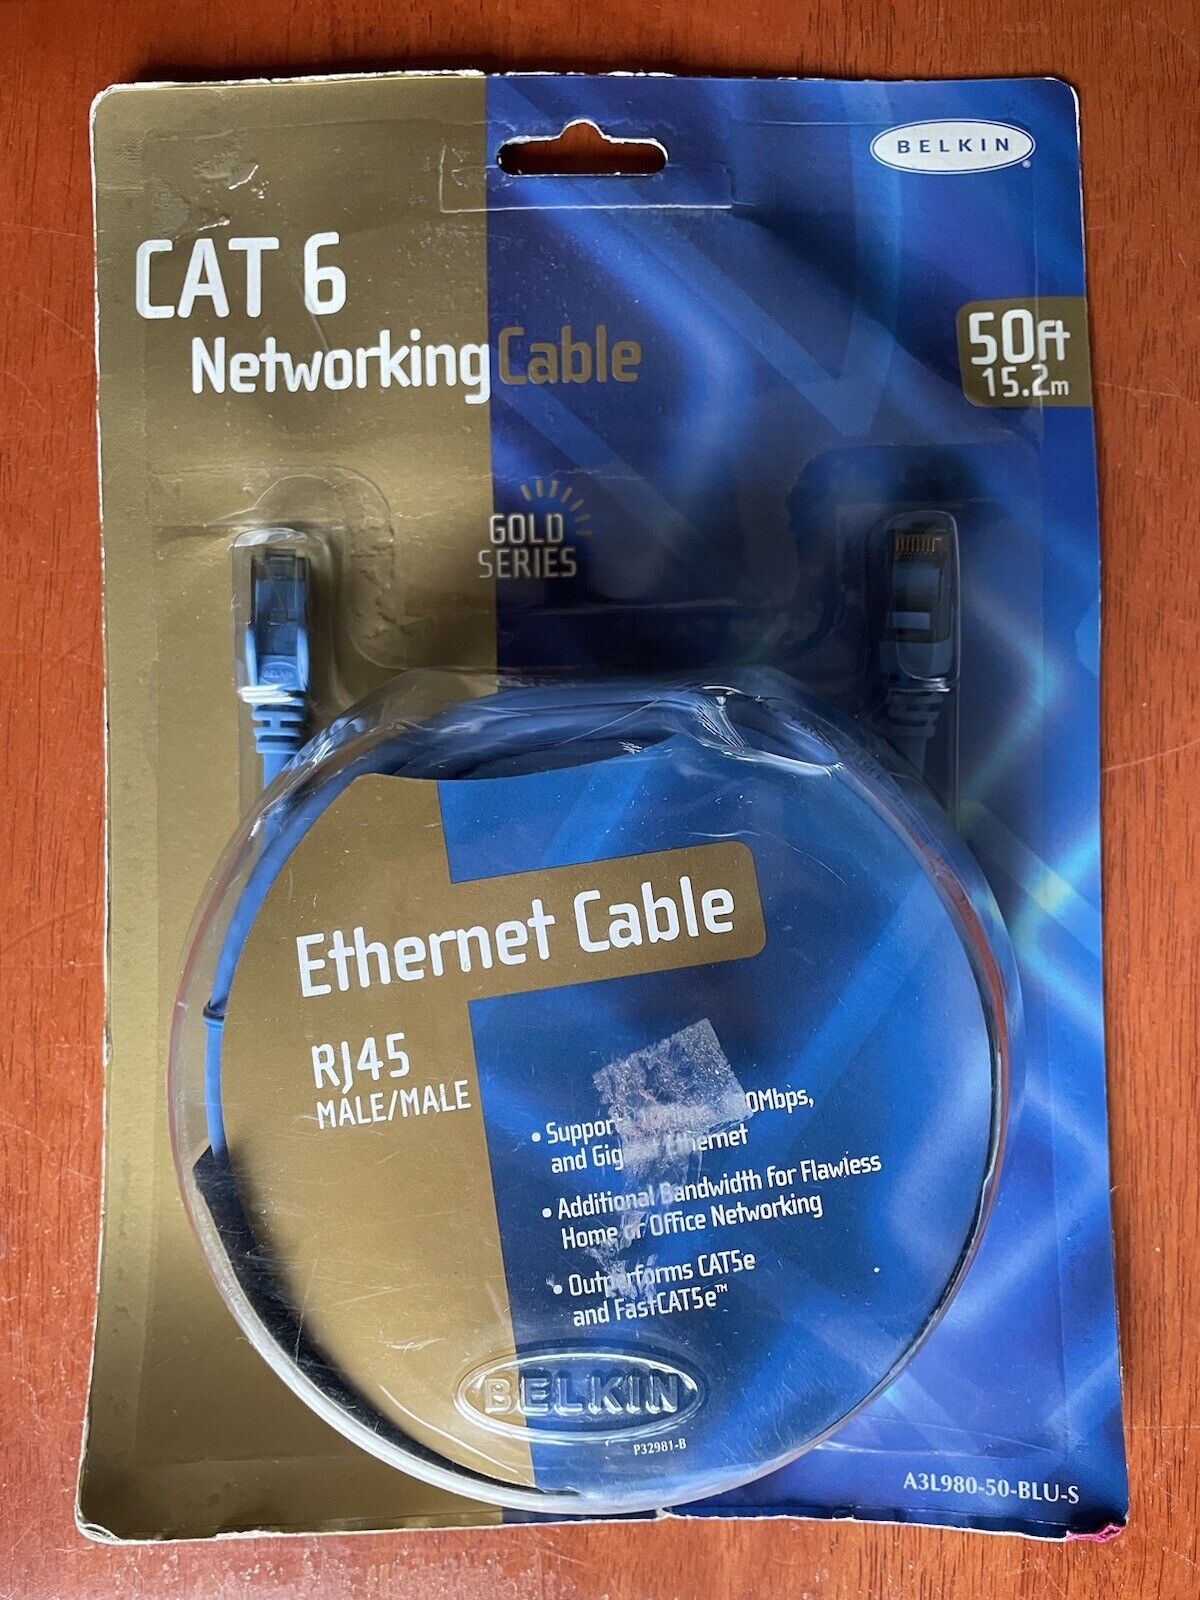 Belkin CAT6 Networking Cable 50 ft Rj45 Male/Male Blue